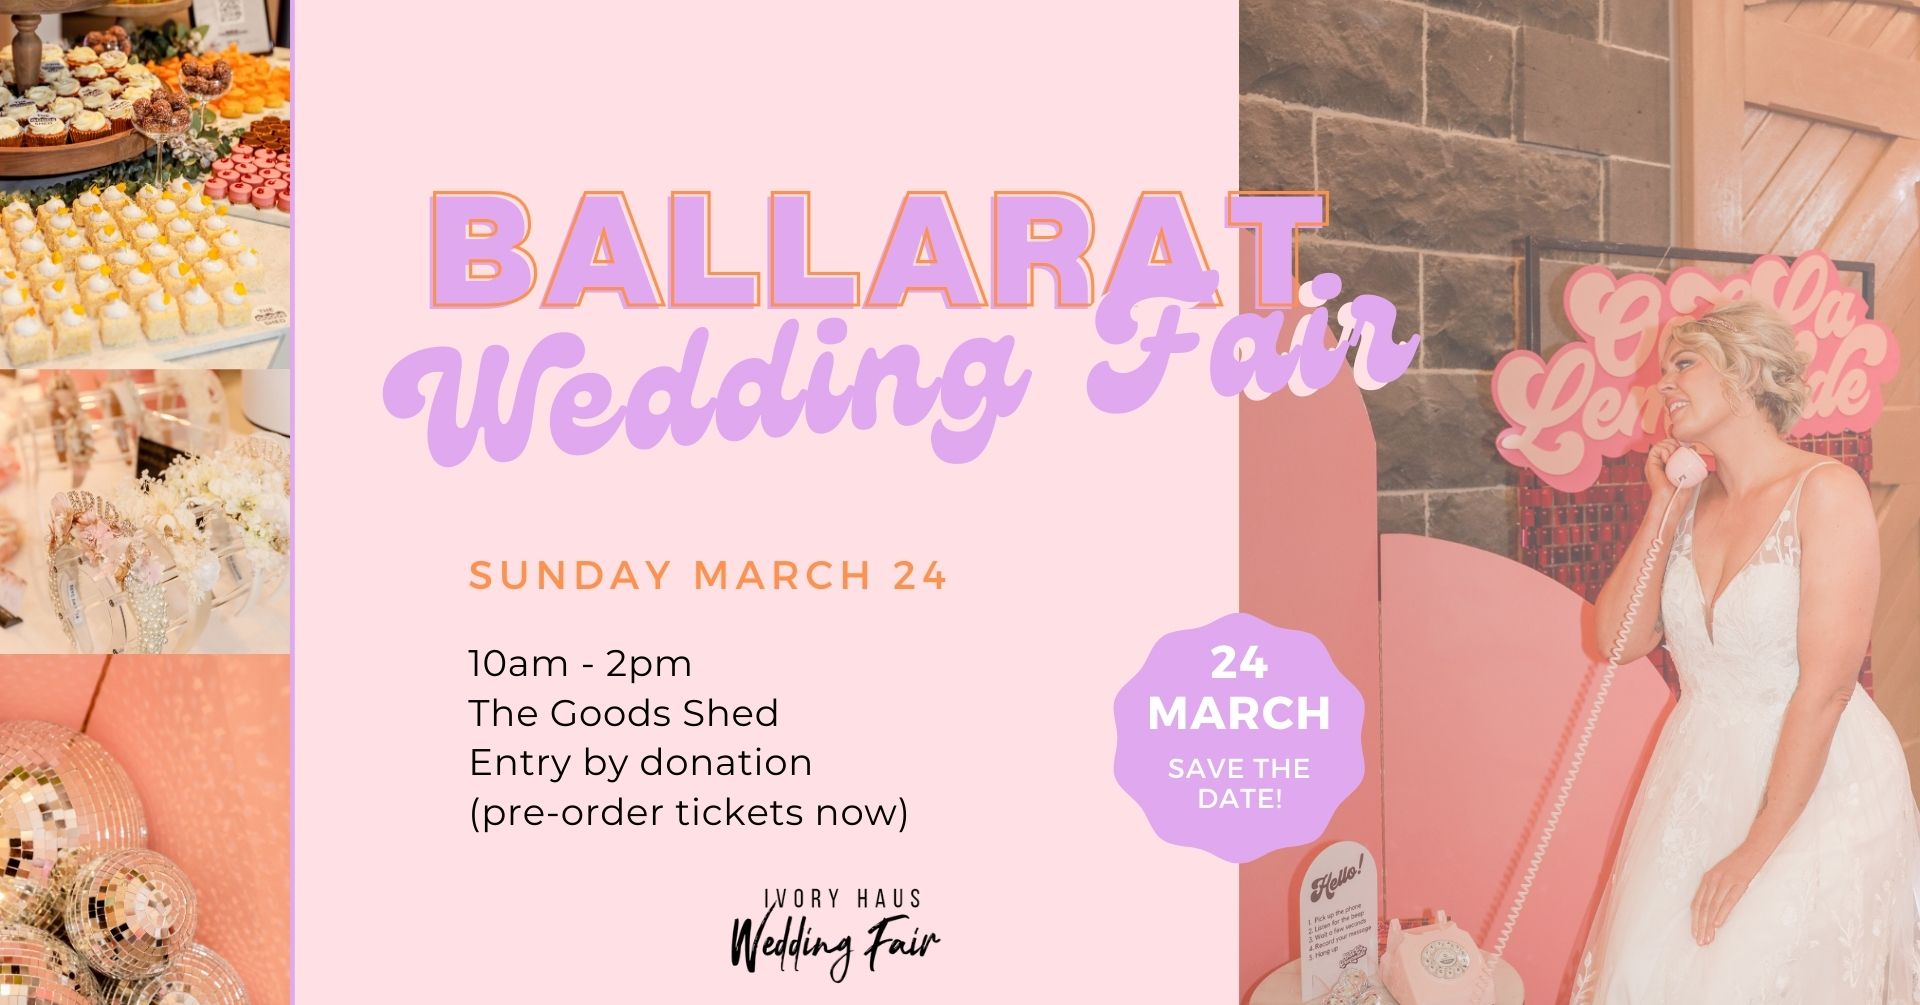 Ballarat Wedding Expo